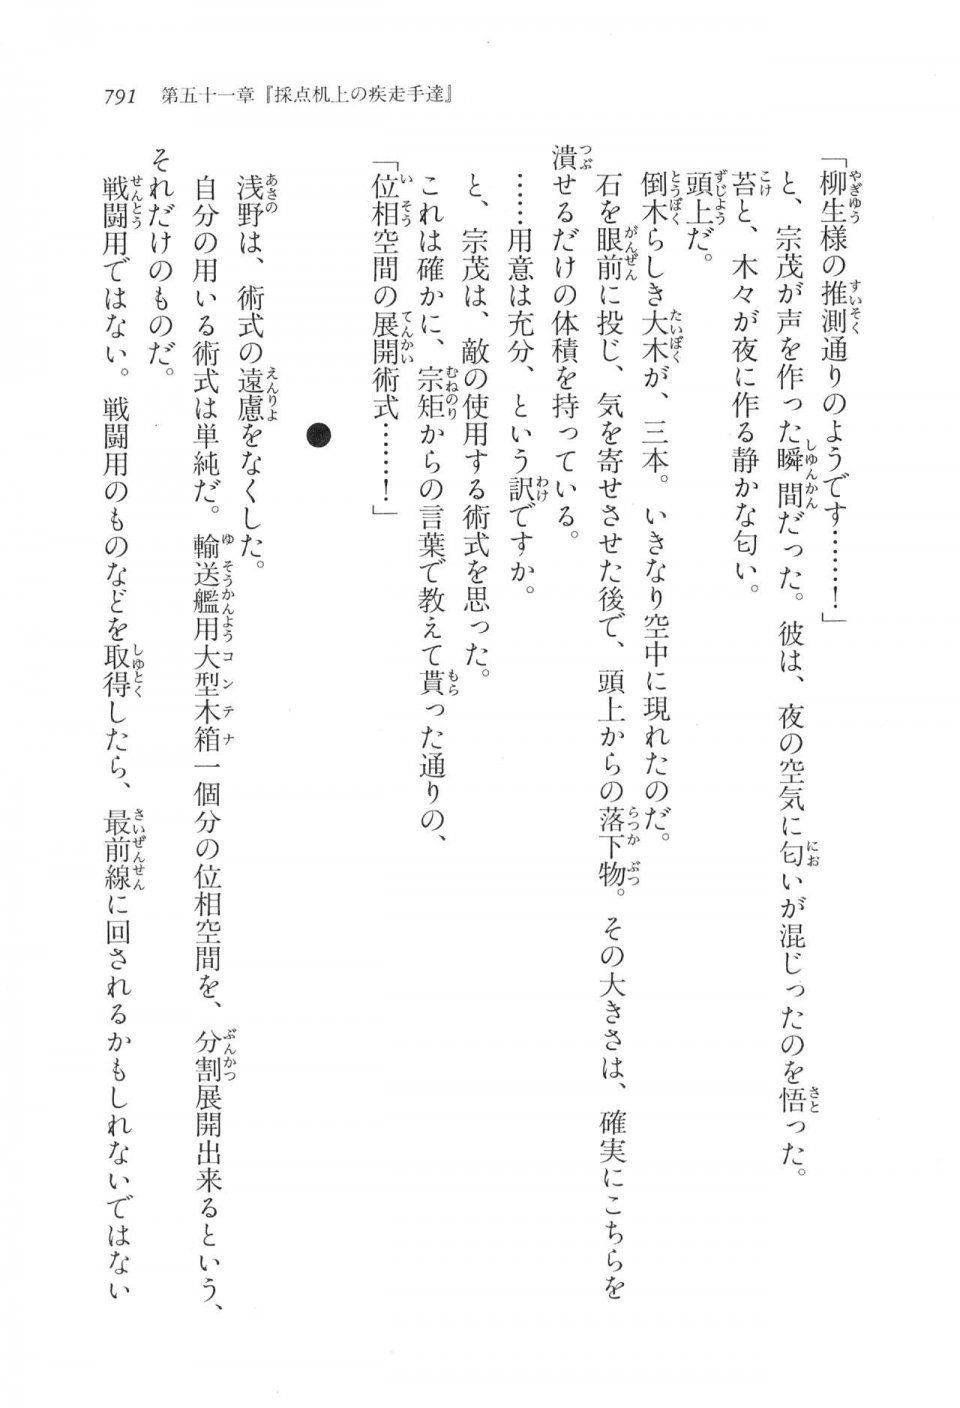 Kyoukai Senjou no Horizon LN Vol 17(7B) - Photo #793